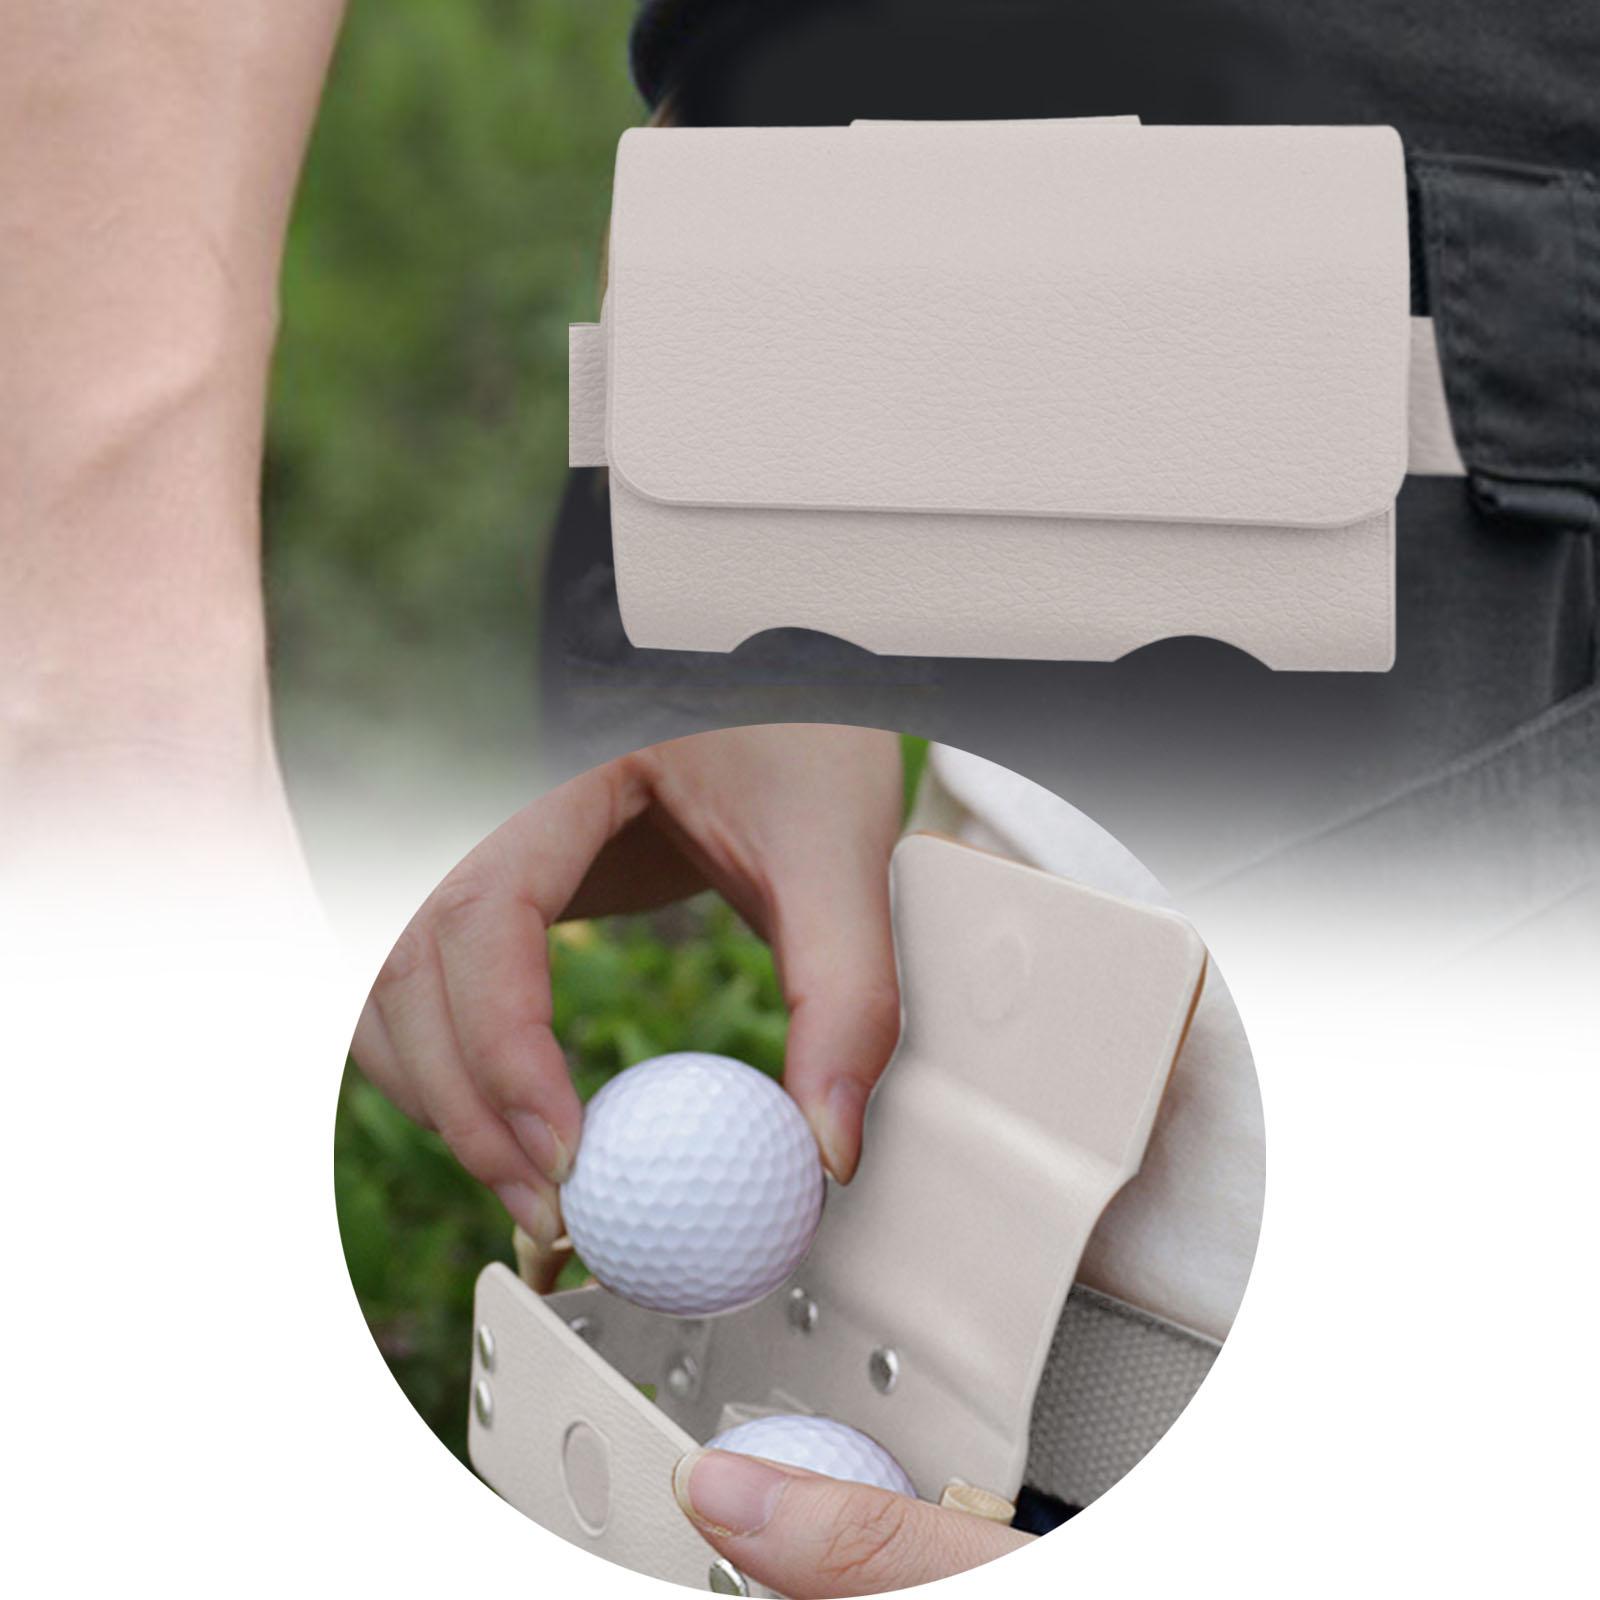 Portable Golf Ball Storage Bag Pouch Belt Waist Bag Organizer Unisex Holder White